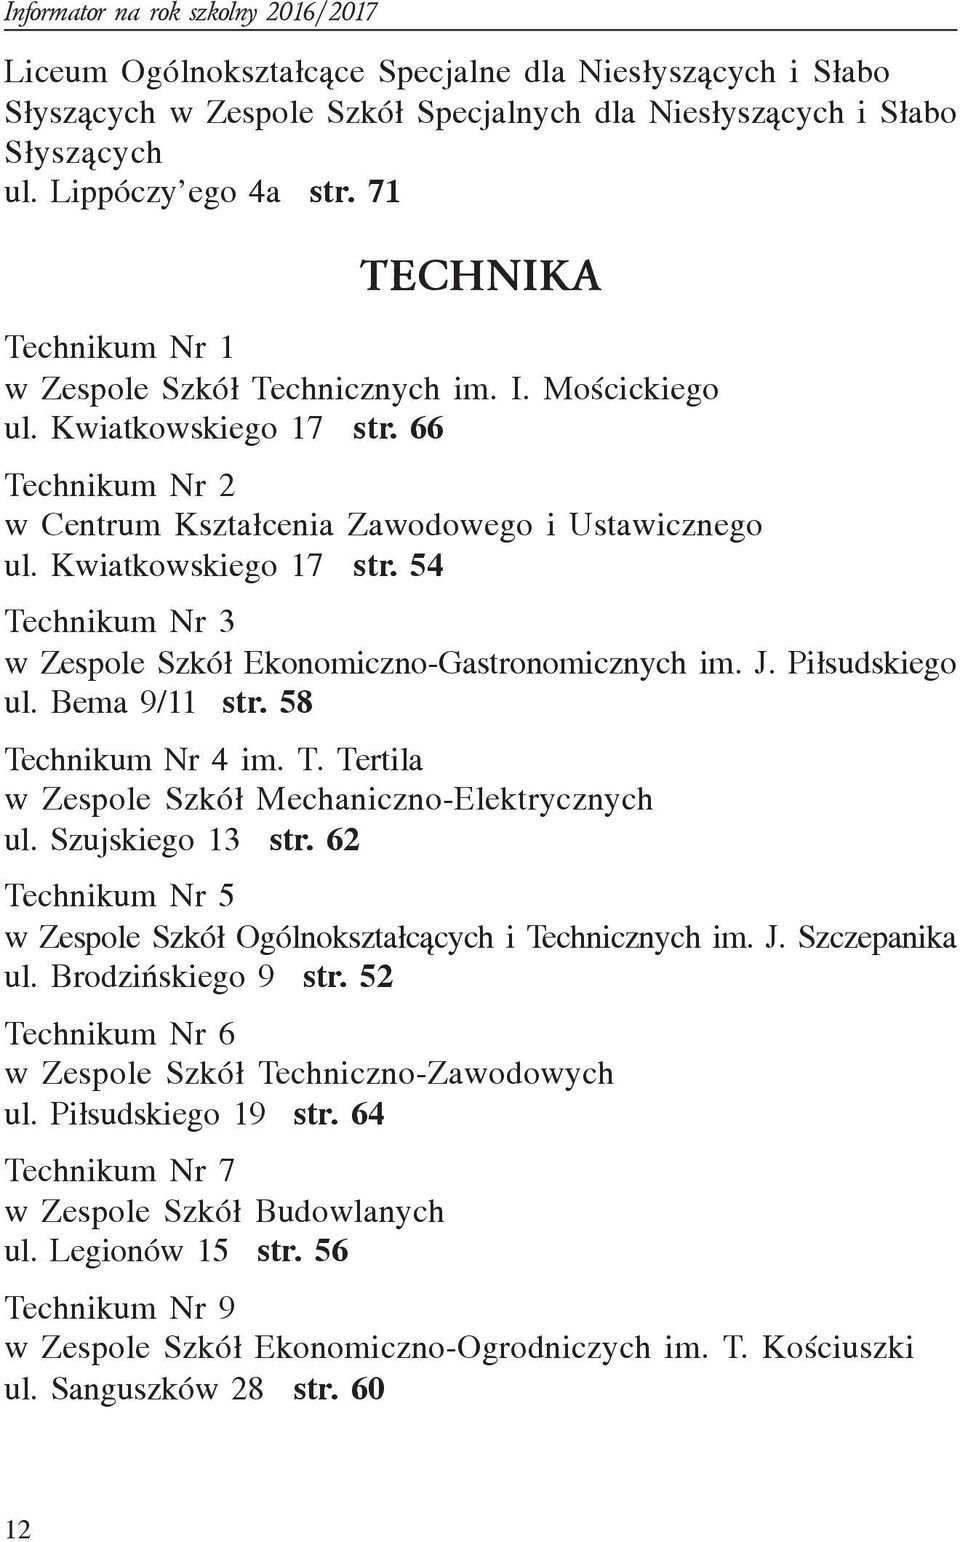 J. Pi³sudskiego ul. Bema 9/11 str. 58 Technikum Nr 4 im. T. Tertila w Zespole Szkó³ Mechaniczno-Elektrycznych ul. Szujskiego 13 str.